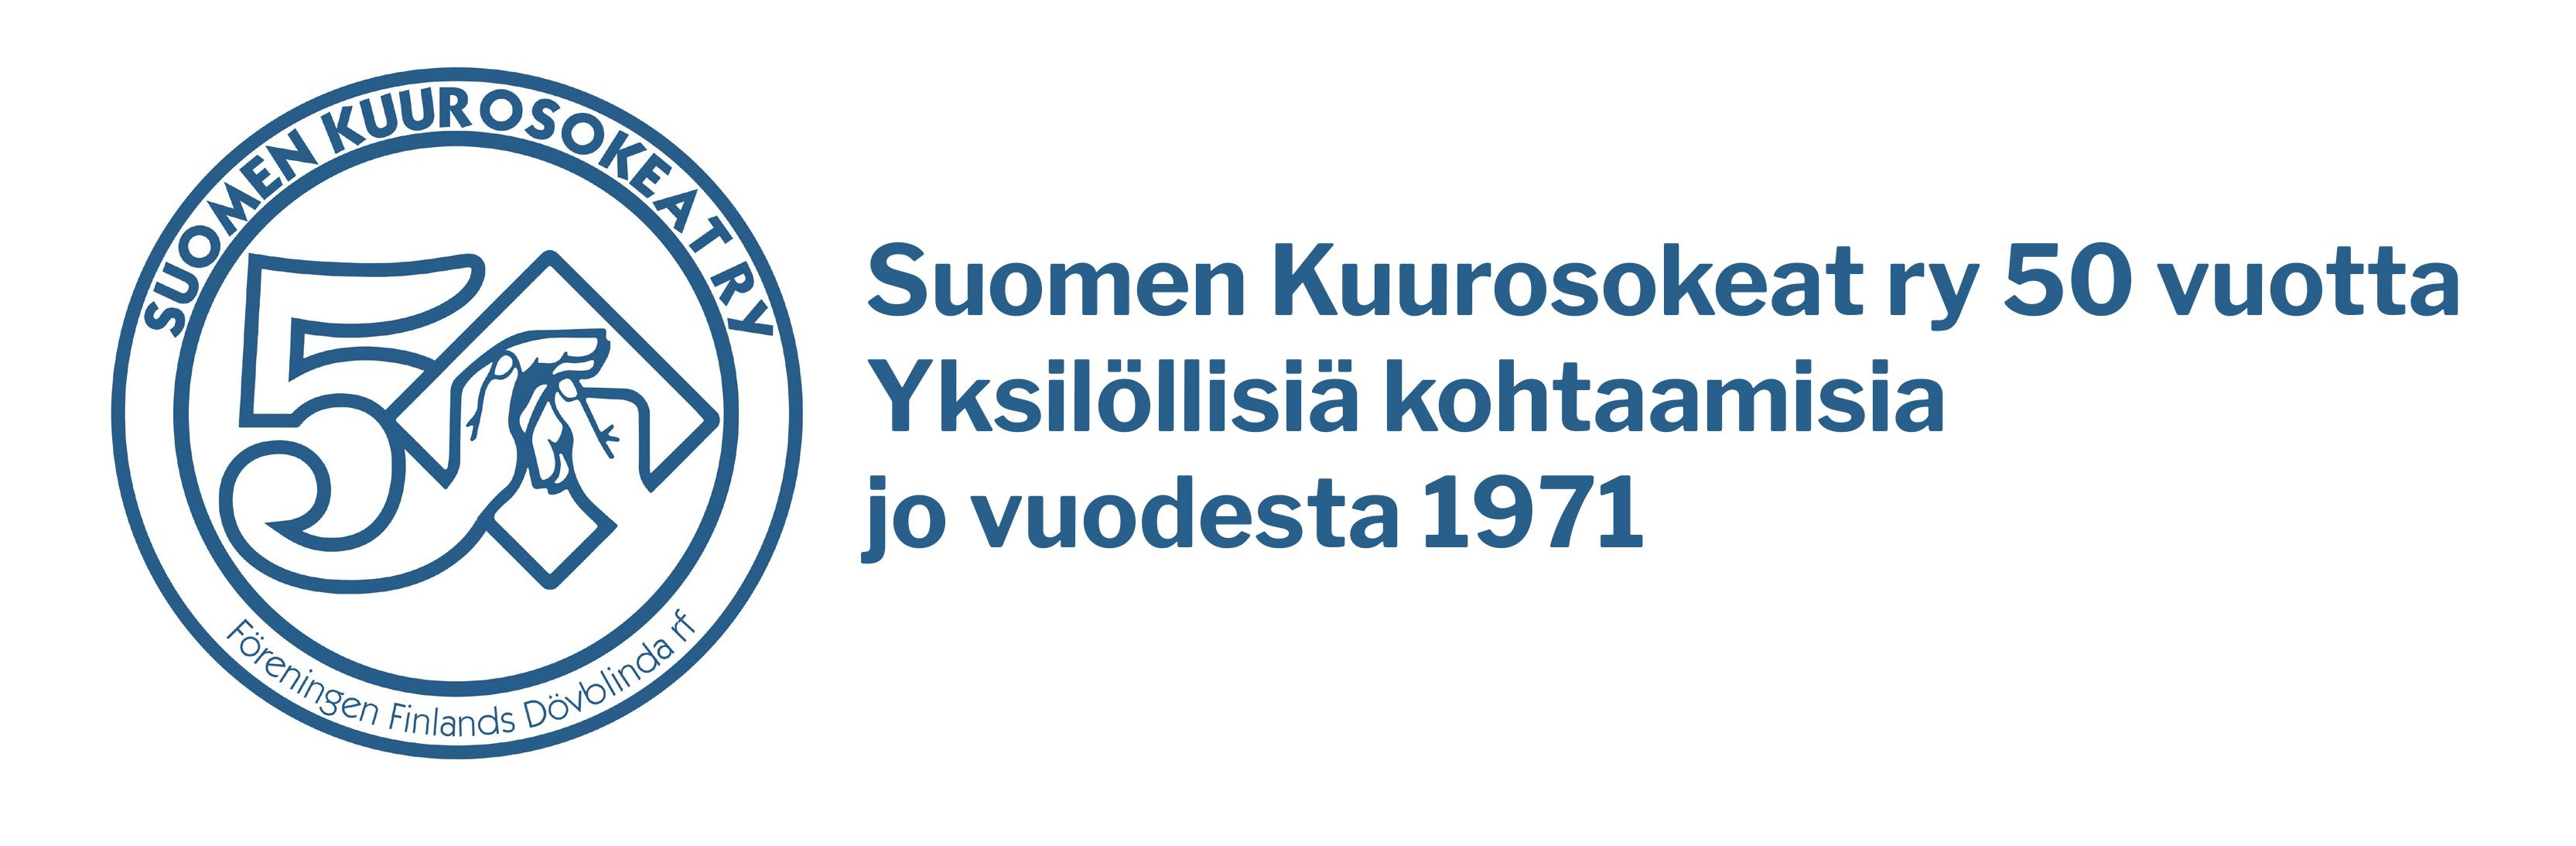 Juhlavuosi logo ja tekstiä "Suomen kuurosokeat ry 50 vuotta yksilöllisiä kohtaamisia jo vuodesta 1971"